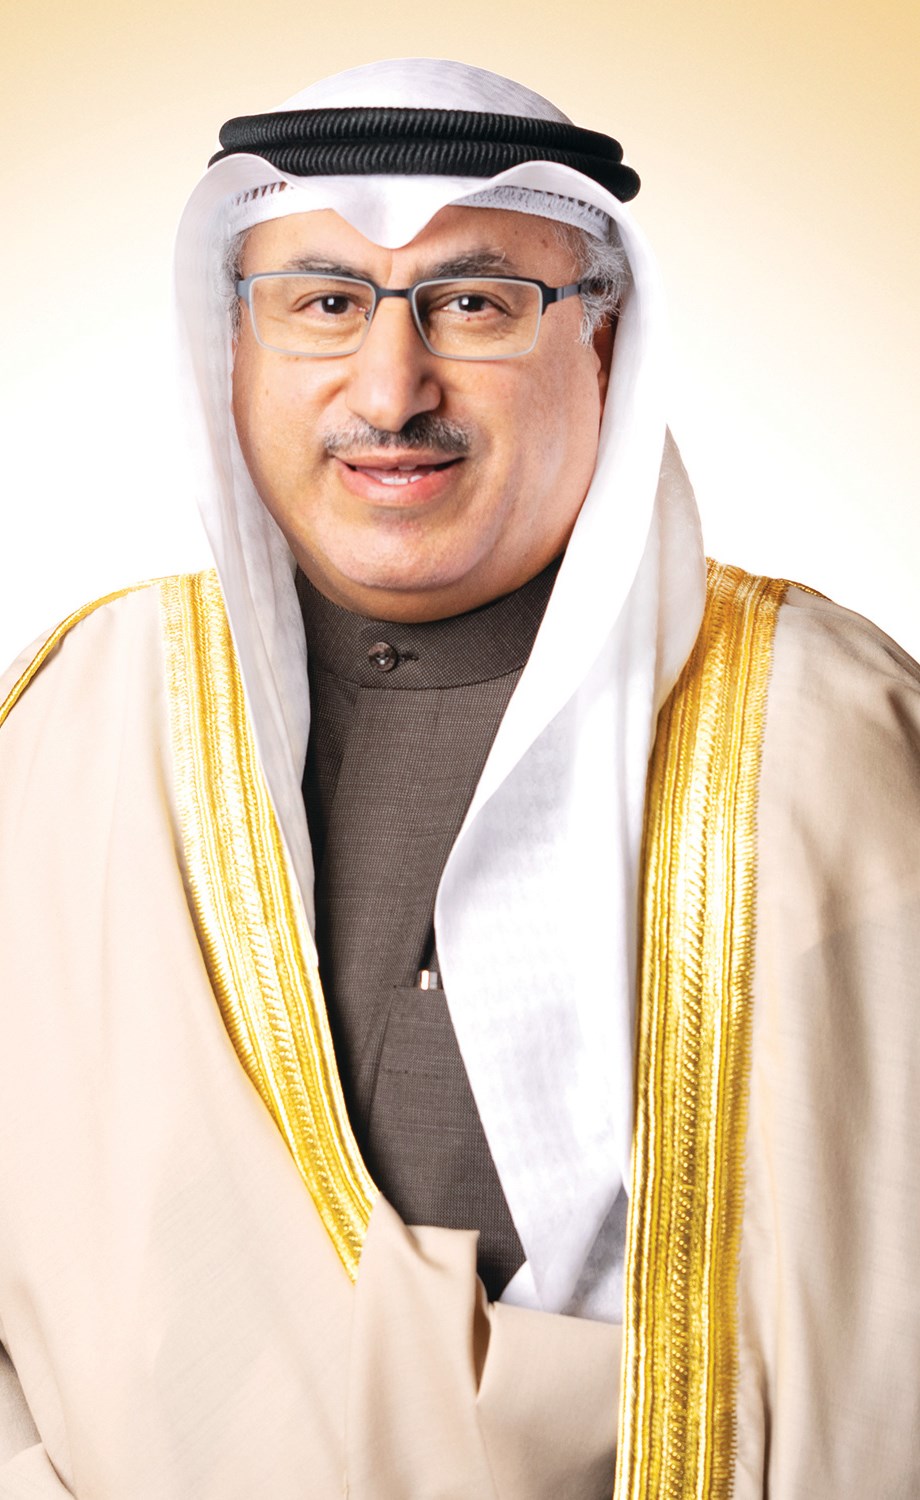 محمد الفارس الكويت ستزيد إنتاجها إلى 2 811 مليون برميل يوميا في أغسطس